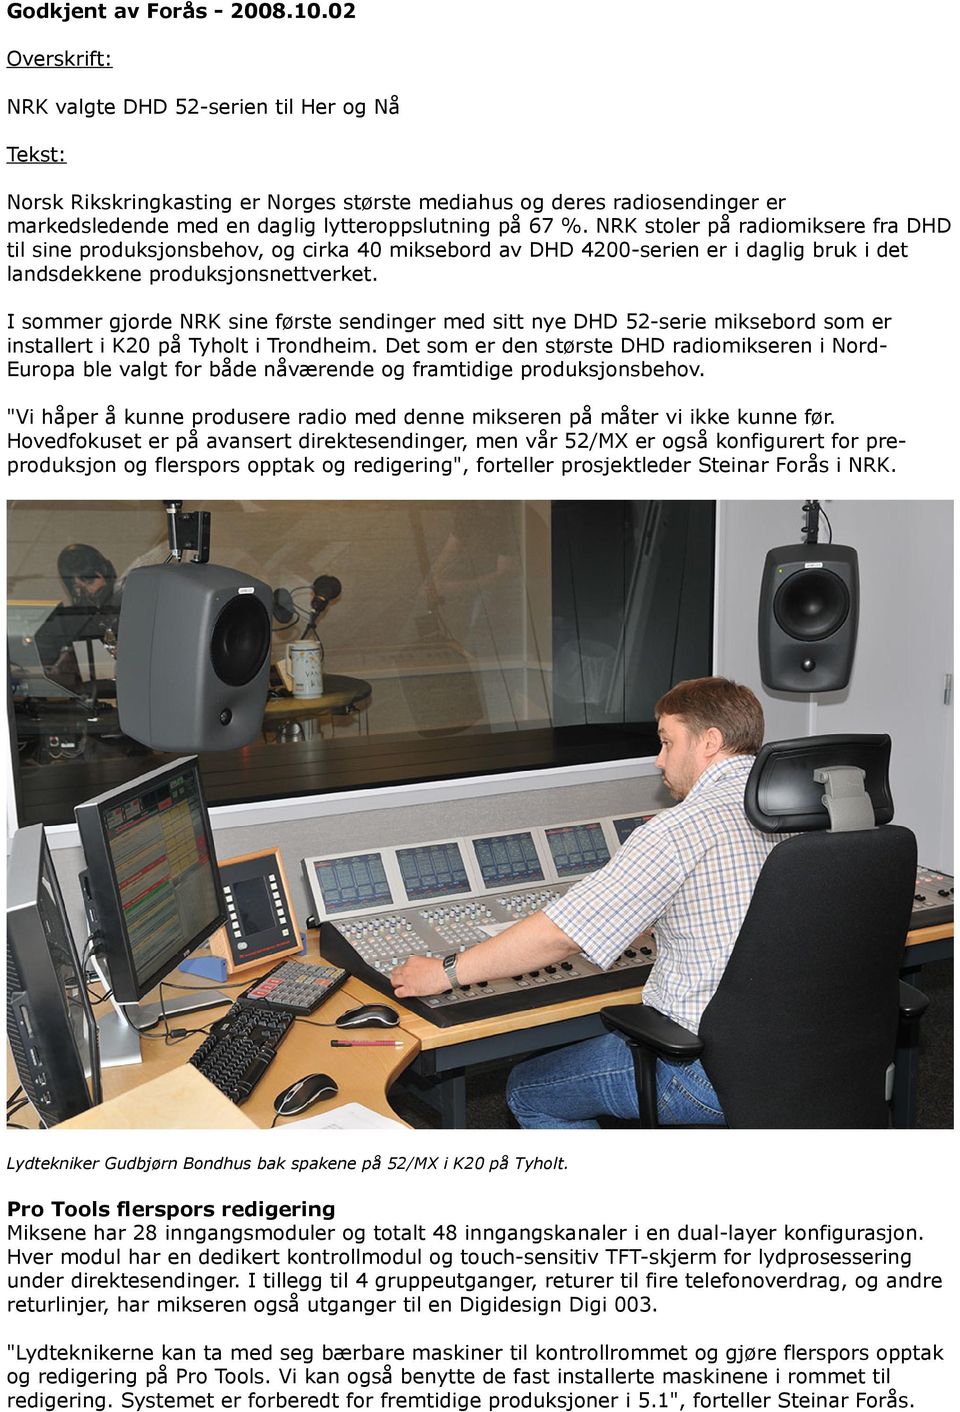 NRK stoler på radiomiksere fra DHD til sine produksjonsbehov, og cirka 40 miksebord av DHD 4200-serien er i daglig bruk i det landsdekkene produksjonsnettverket.